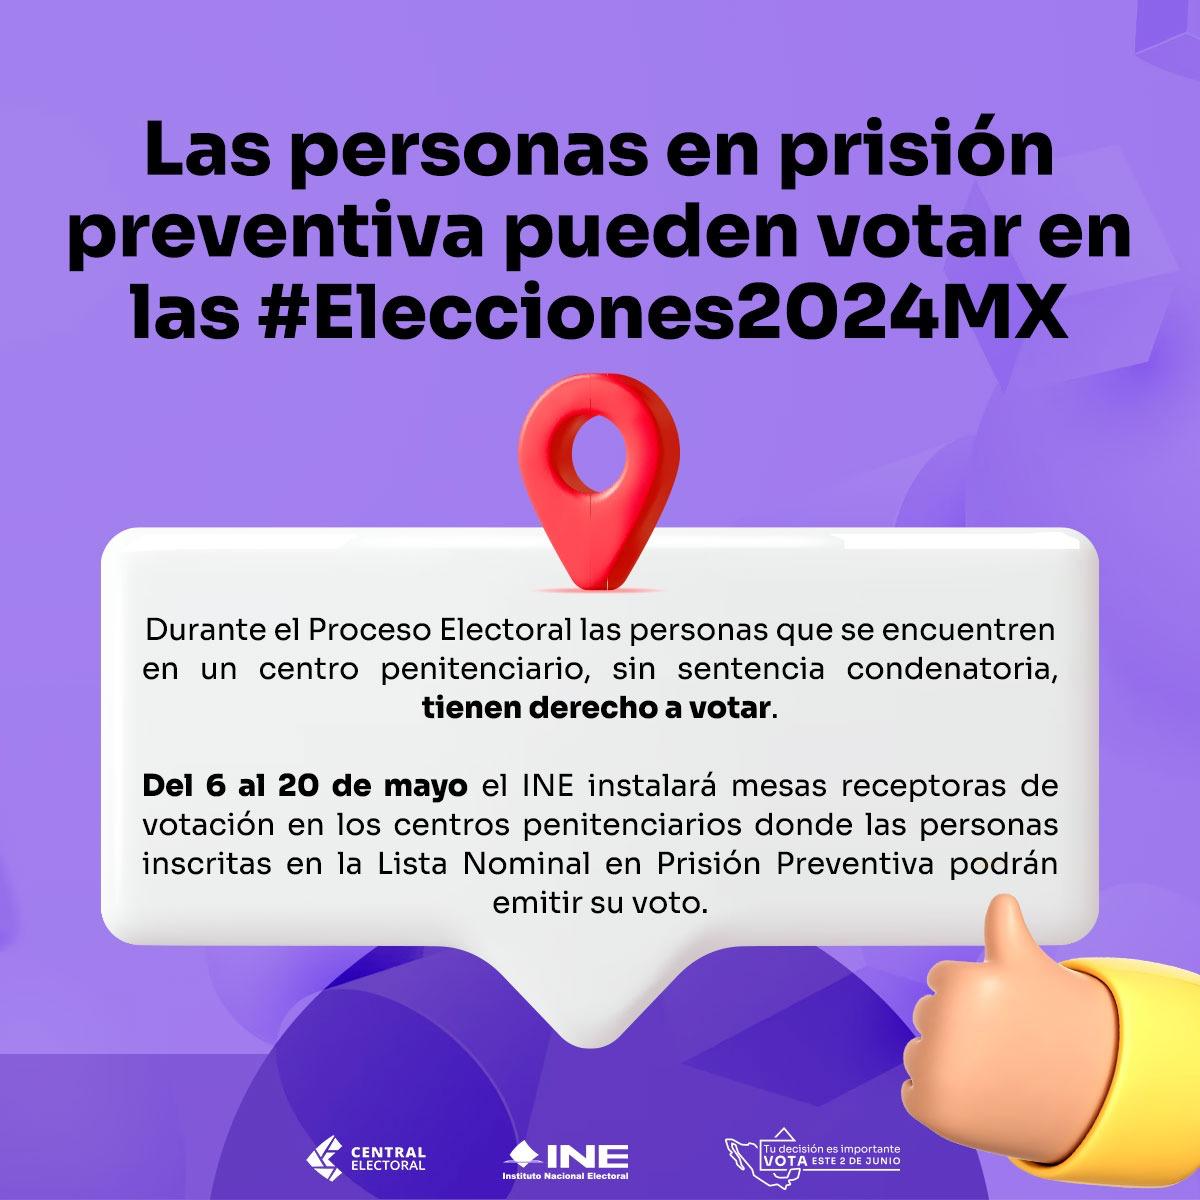 En las #Elecciones2024MX, las personas en #PrisiónPreventiva incluidas en la Lista Nominal que se encuentren en espera de una sentencia definitiva, podrán emitir su voto del 6 al 20 de mayo. Conoce más en: ine.mx